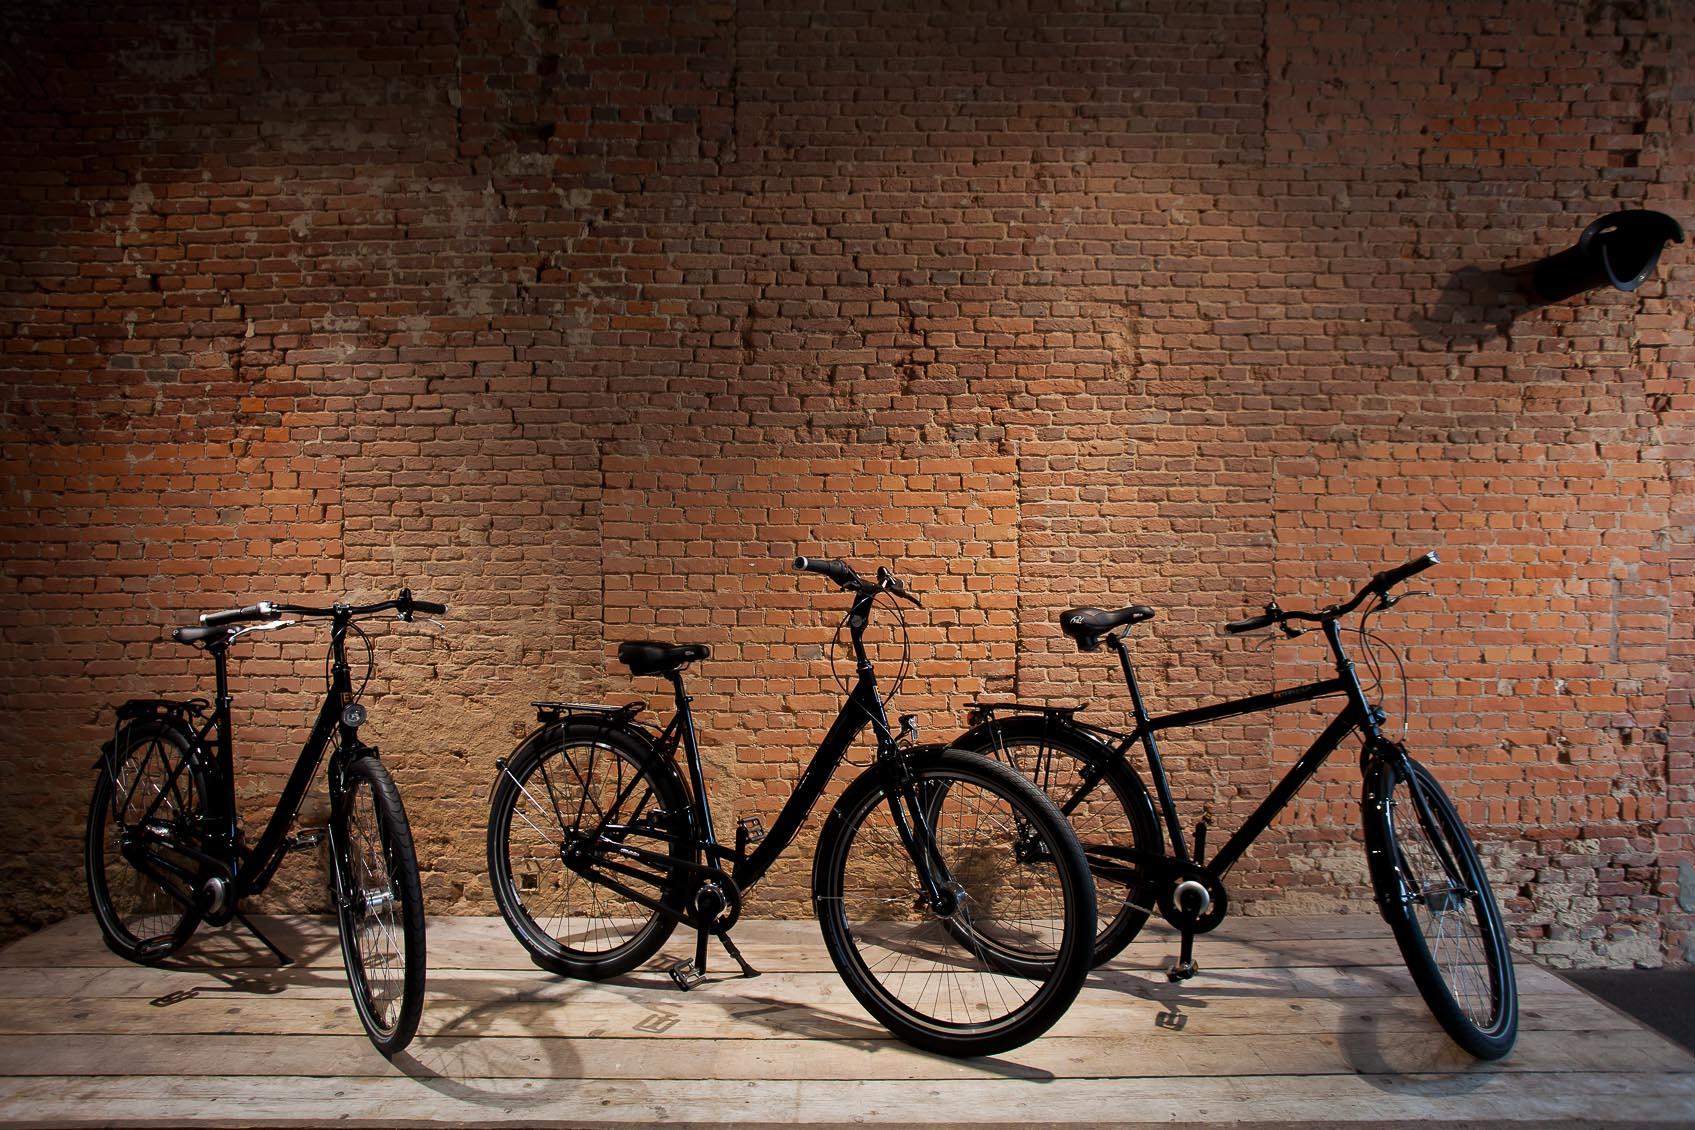 Verlichting geeft karakter aan bestaand pand verbouwing tot fietsen winkel